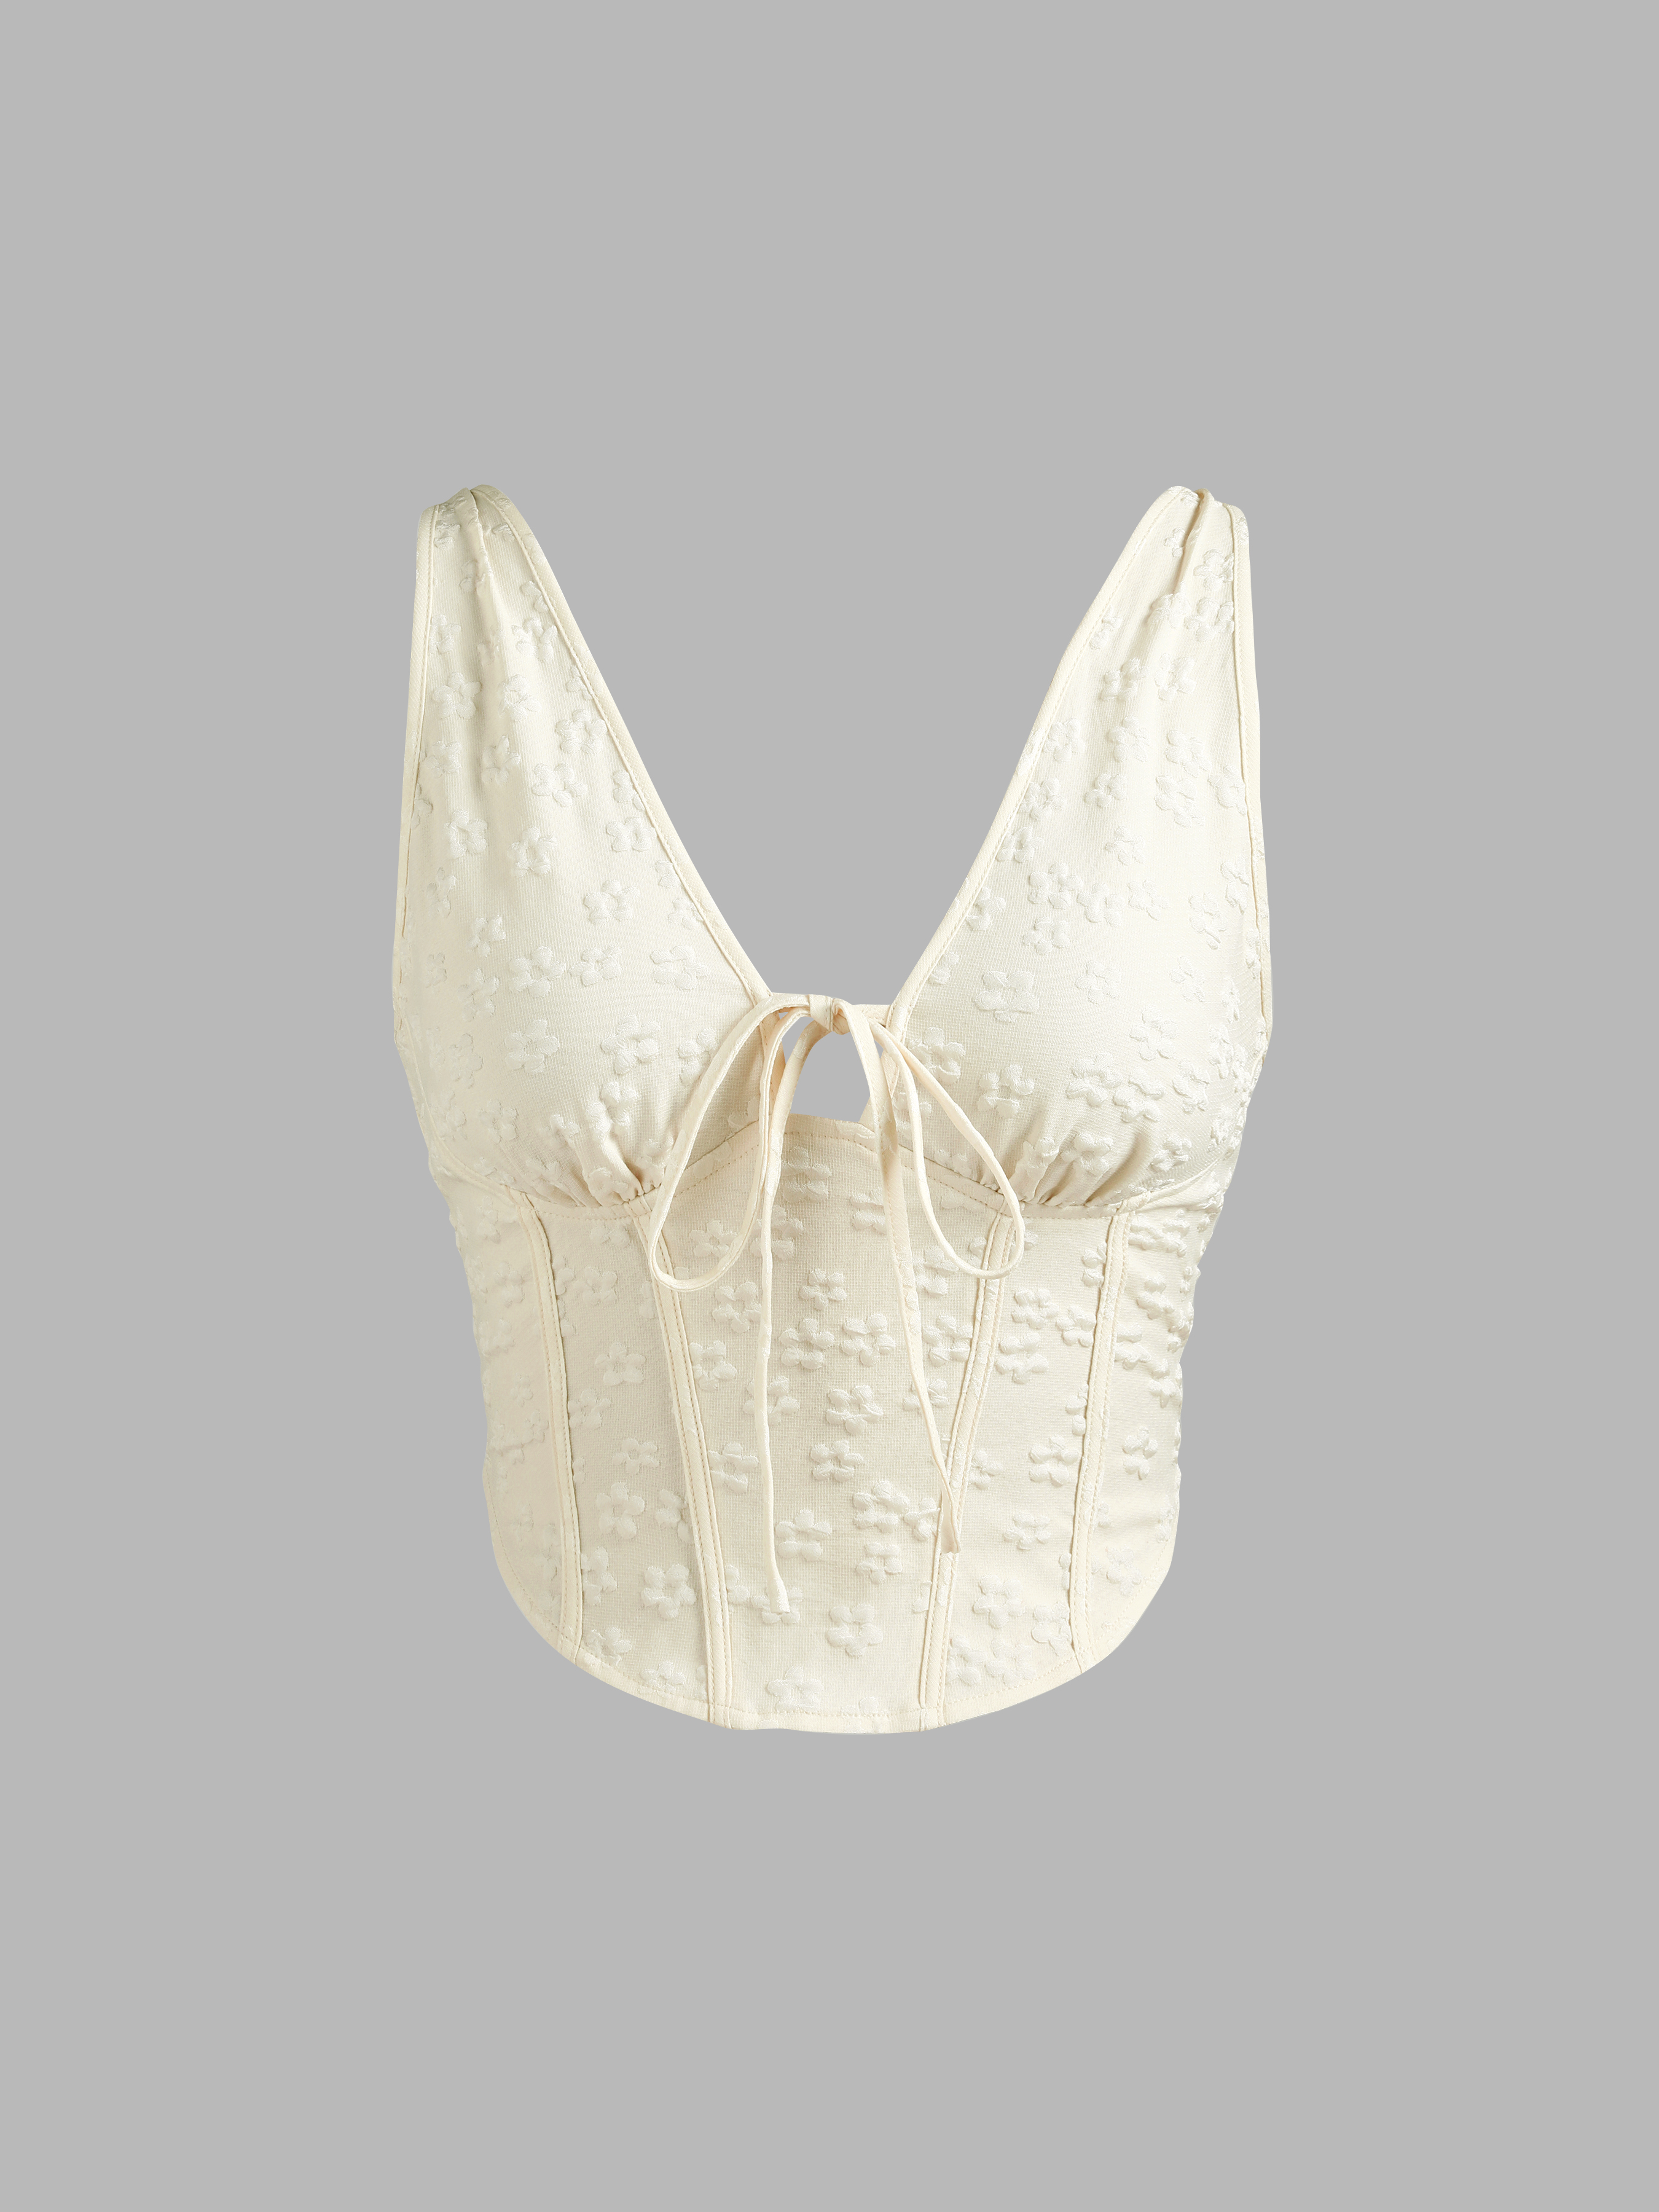 Top corset floral✨ Entrega Inmediata 1. Naranja S M L 2. Cafe S M L Lps.  750.00 Envíos a todo el País